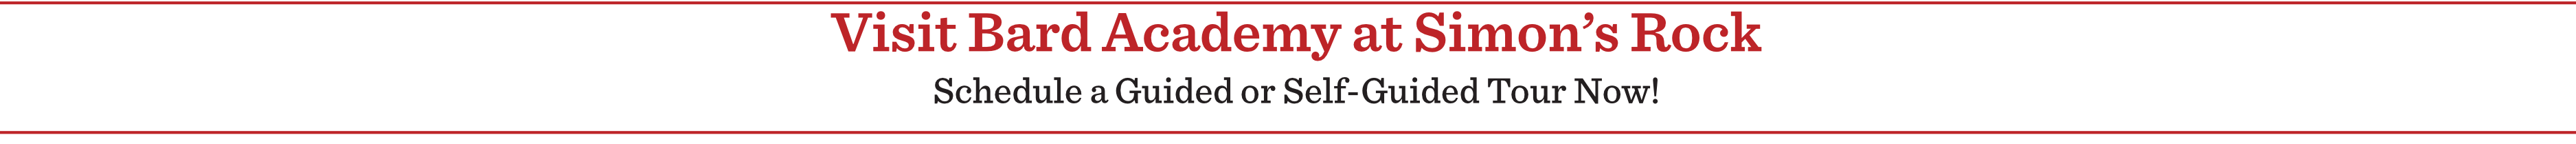 Visit Bard Academy at Simon's Rock